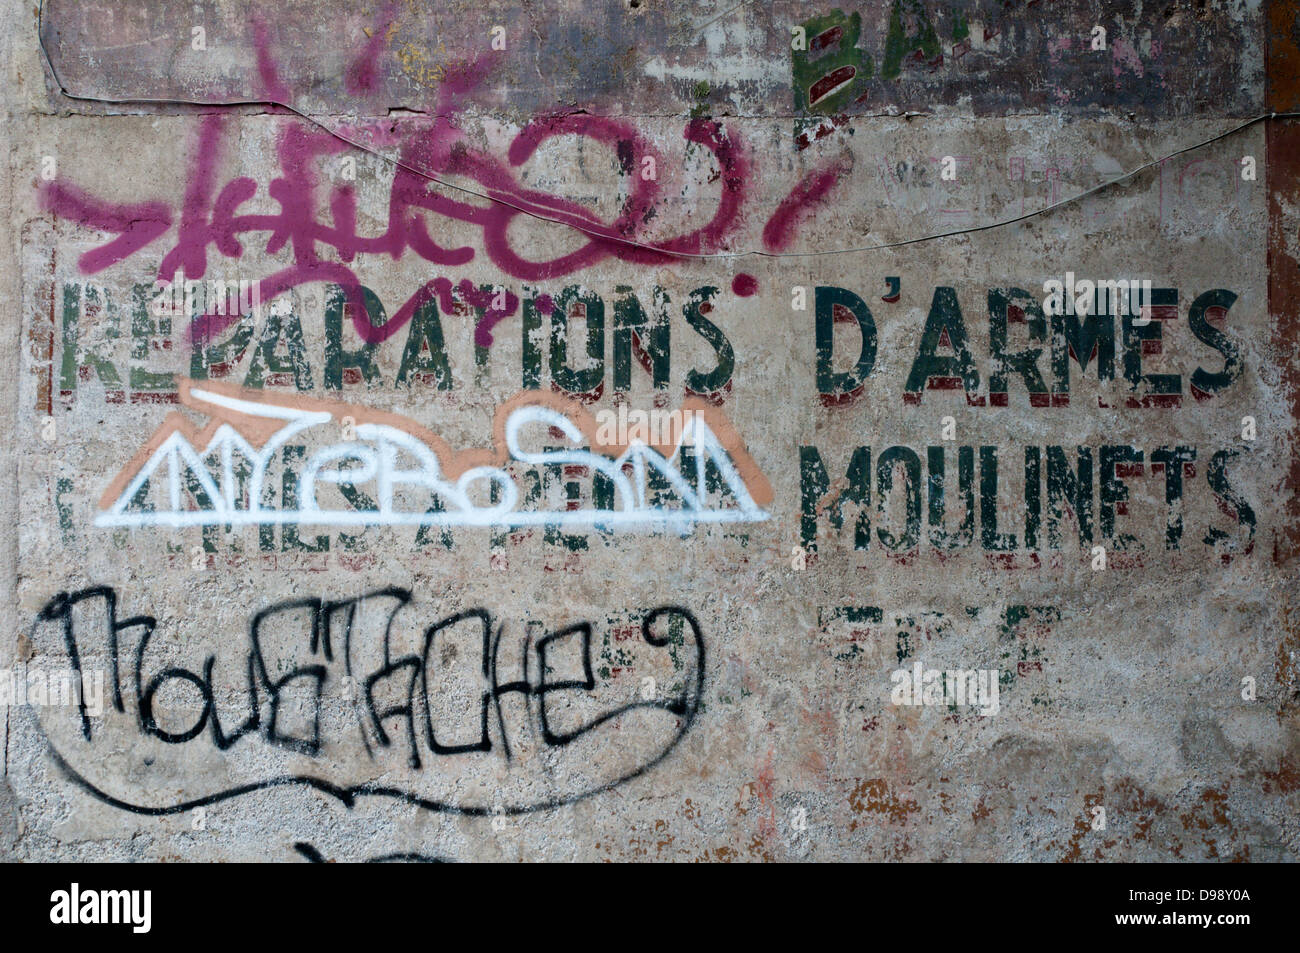 Graffiti moderne sur les vestiges d'une vieille enseigne publicitaire en France. Banque D'Images